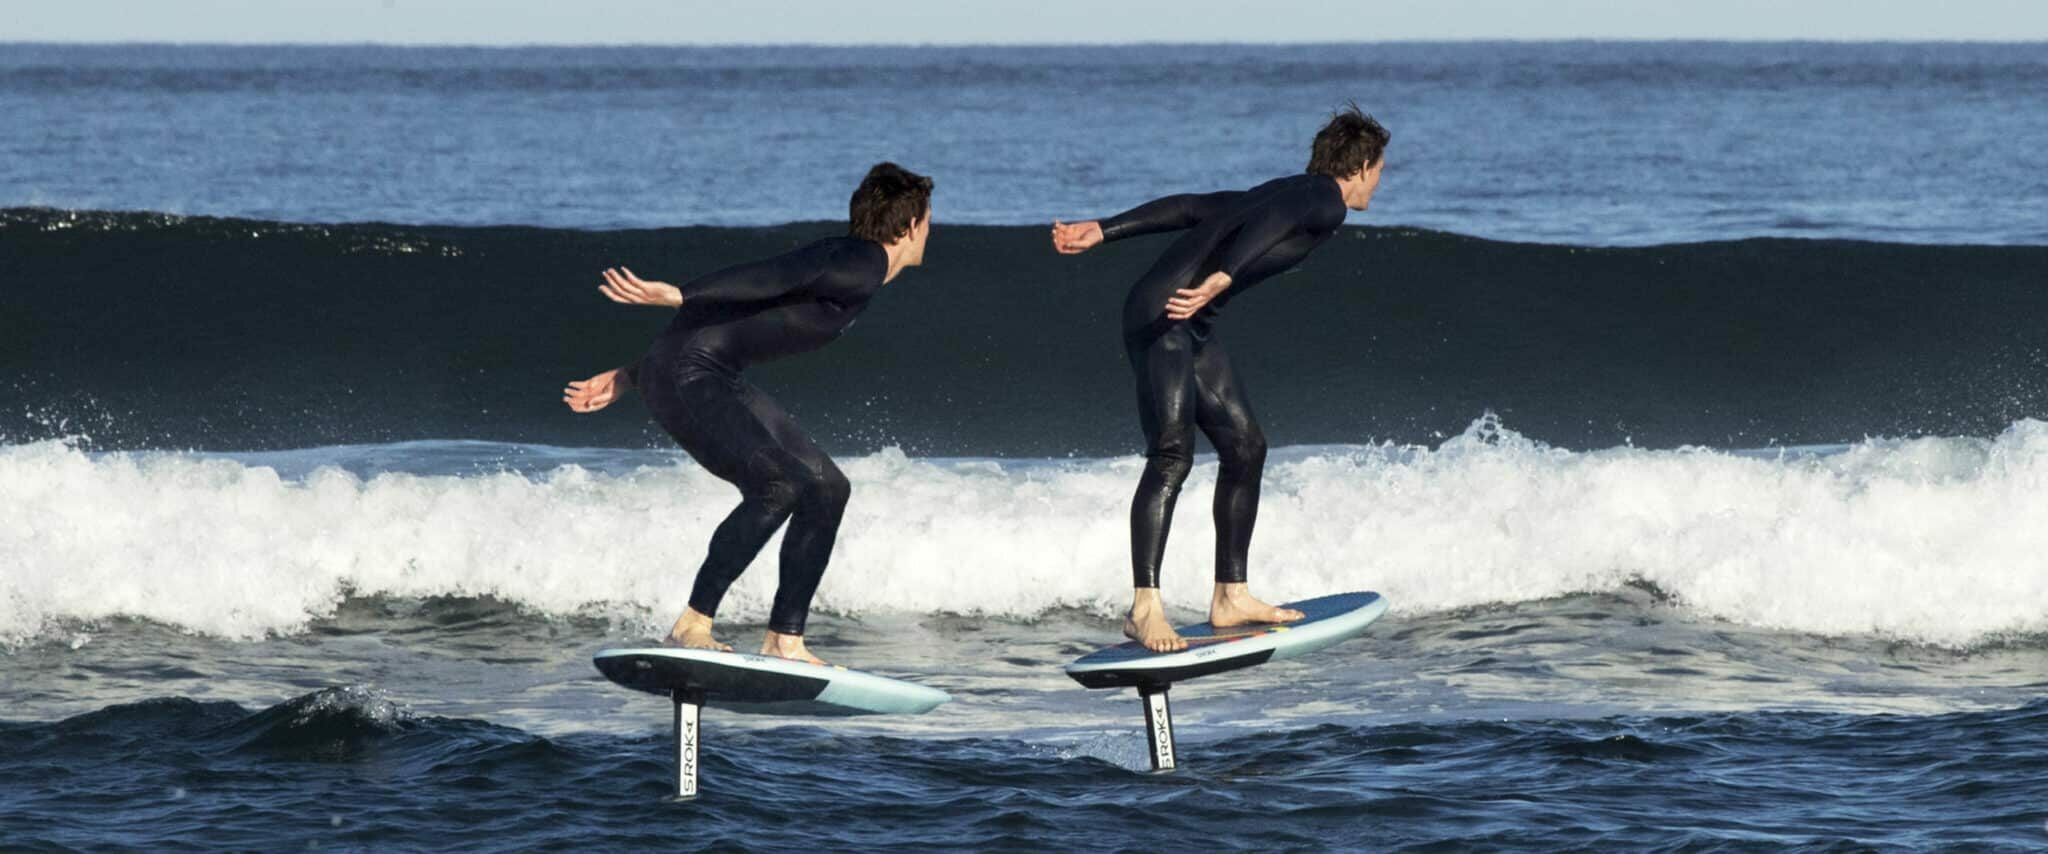 Tutorial : Lernen Sie, wie man im Surf Foil pumpt